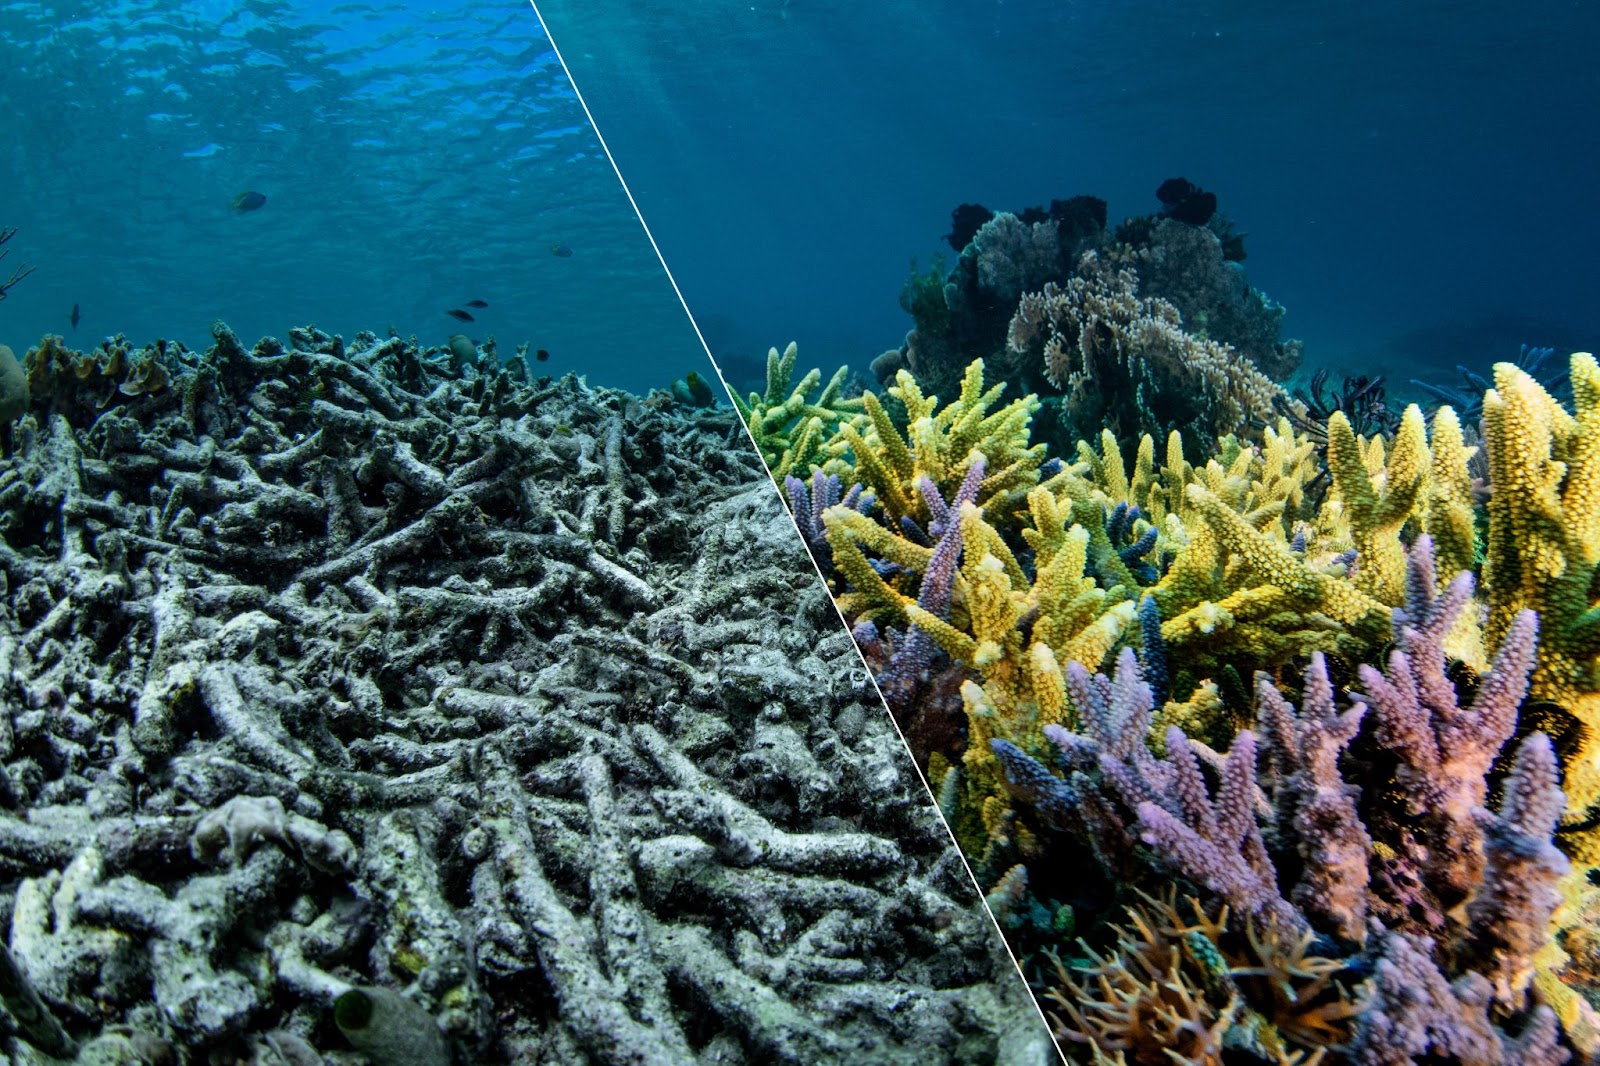 Uma imagem de coral, dividido ao meio: à esquerda, o coral cinzento eincolor desmorona enquanto o mar ondula acima dele. À direita vemos coraisem pé, vibrantes em amarelos, roxos e rosas. Um contraste entre coraismoribundos e coraissaudáveis.